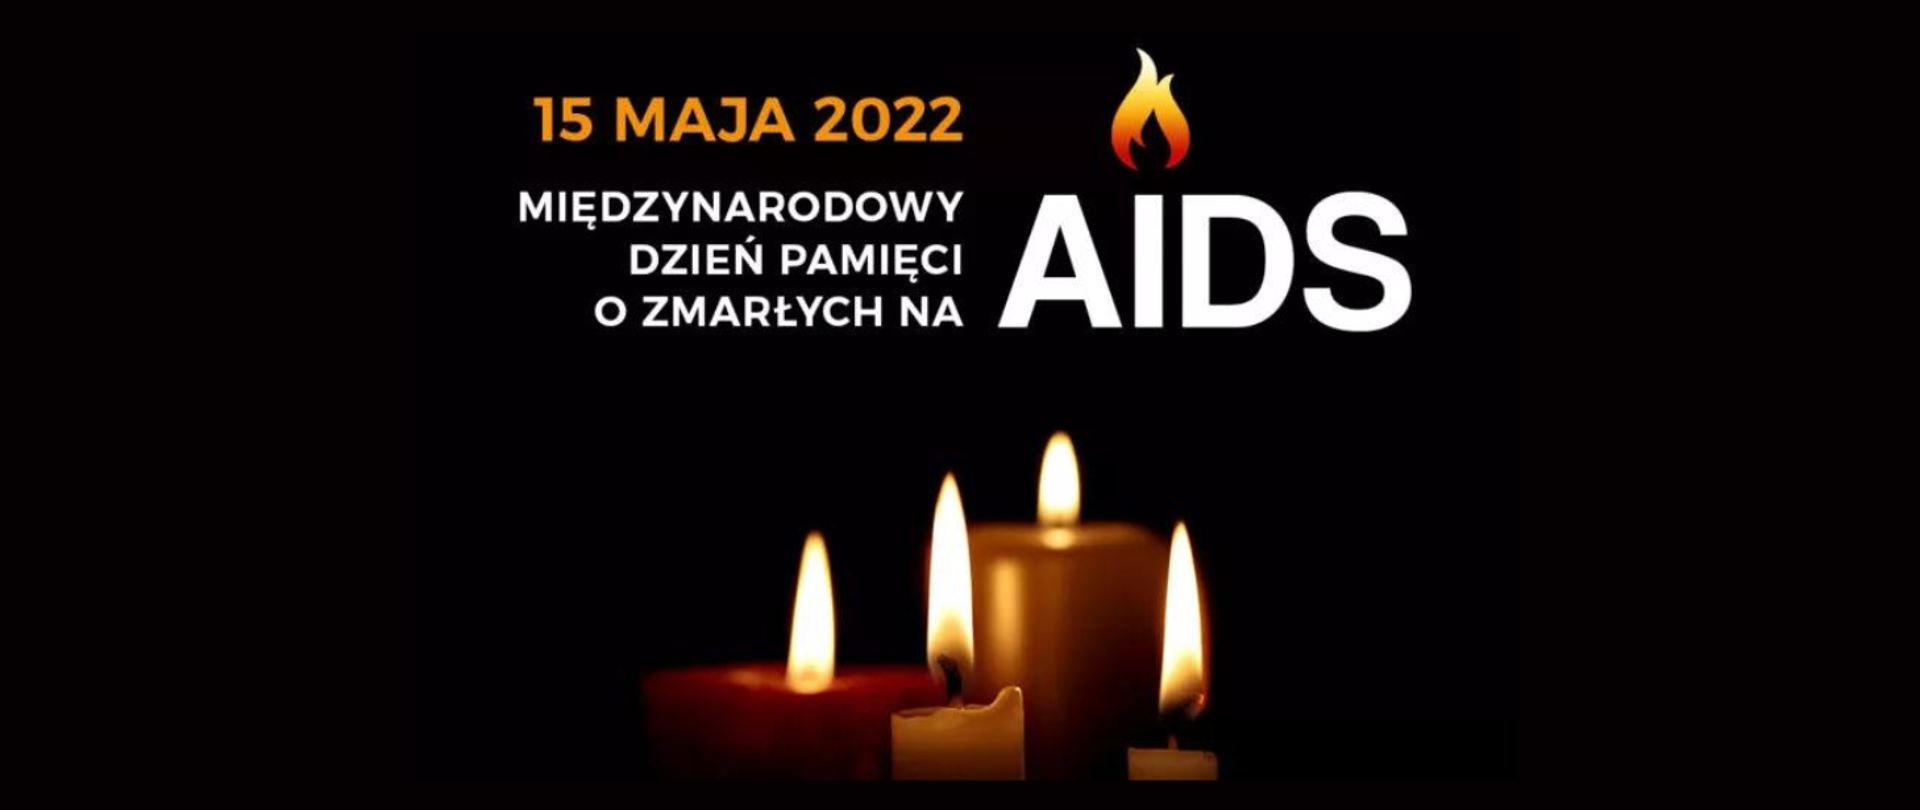 Grafika przedstawia cztery płomienie świec na czarnym tle. Nad płomieniami widnieje napis 15 maja 2022 Międzynarodowy Dzień Pamięci o Zmarłych na AIDS.